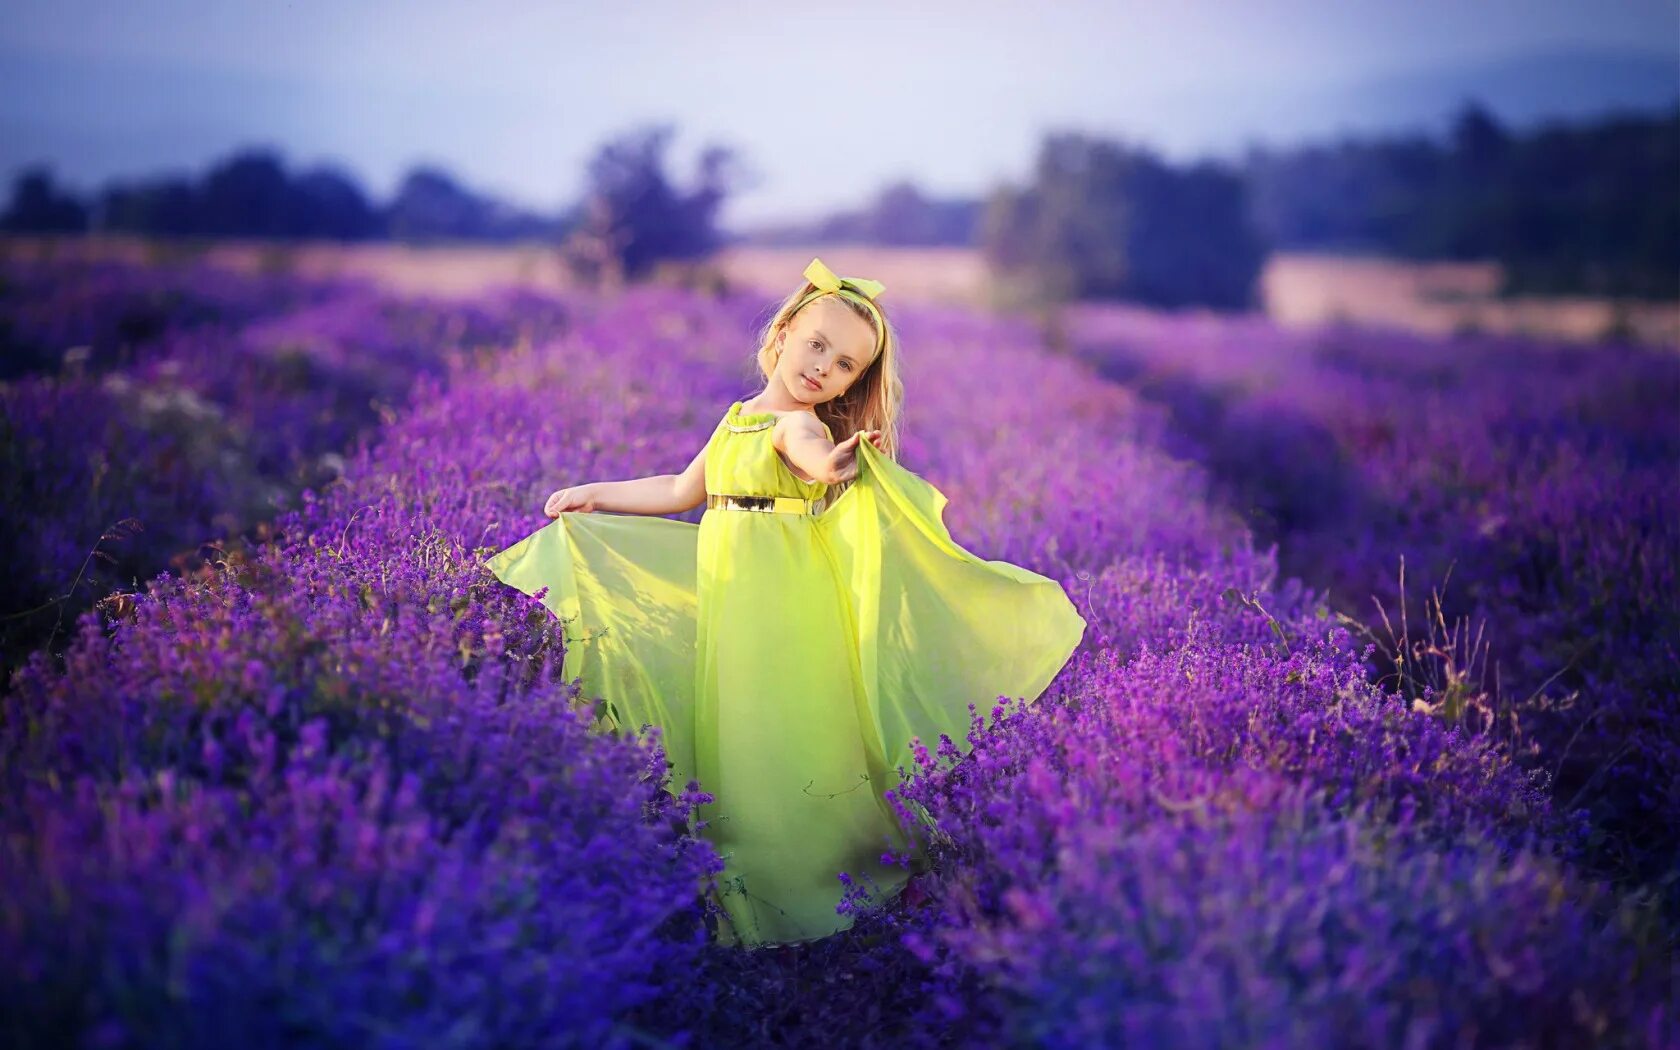 Картинки желтое фиолетовое. Девушка в цветочном поле. Девушка в фиолетовом платье. Девочка в лавандовом поле. Сиреневое платье.